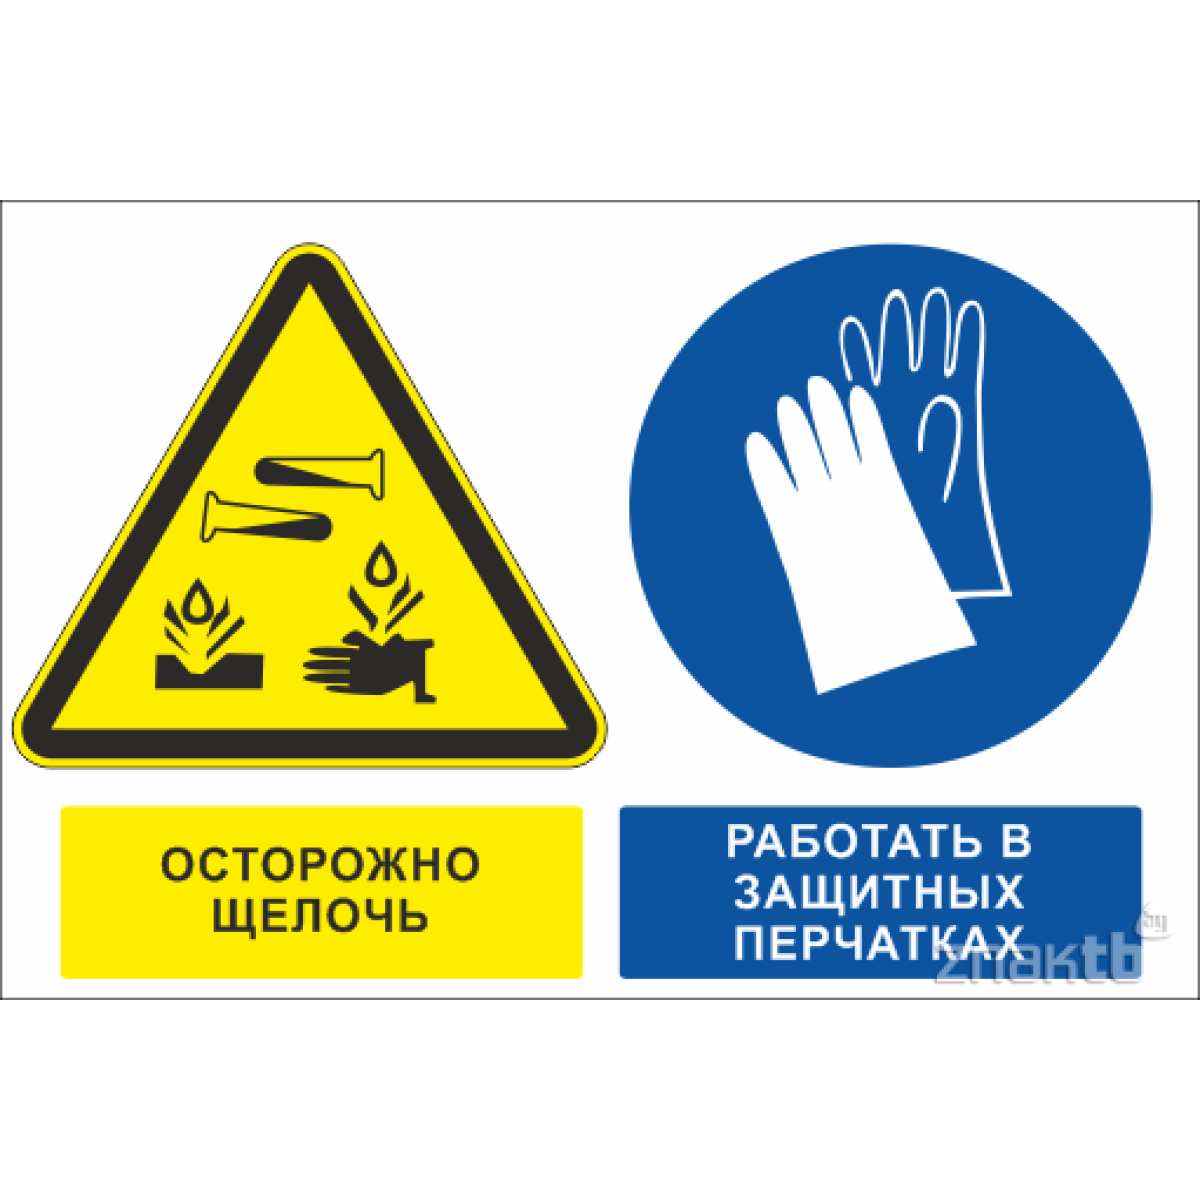 Знак Осторожно щелочь, работать в защитных перчатках